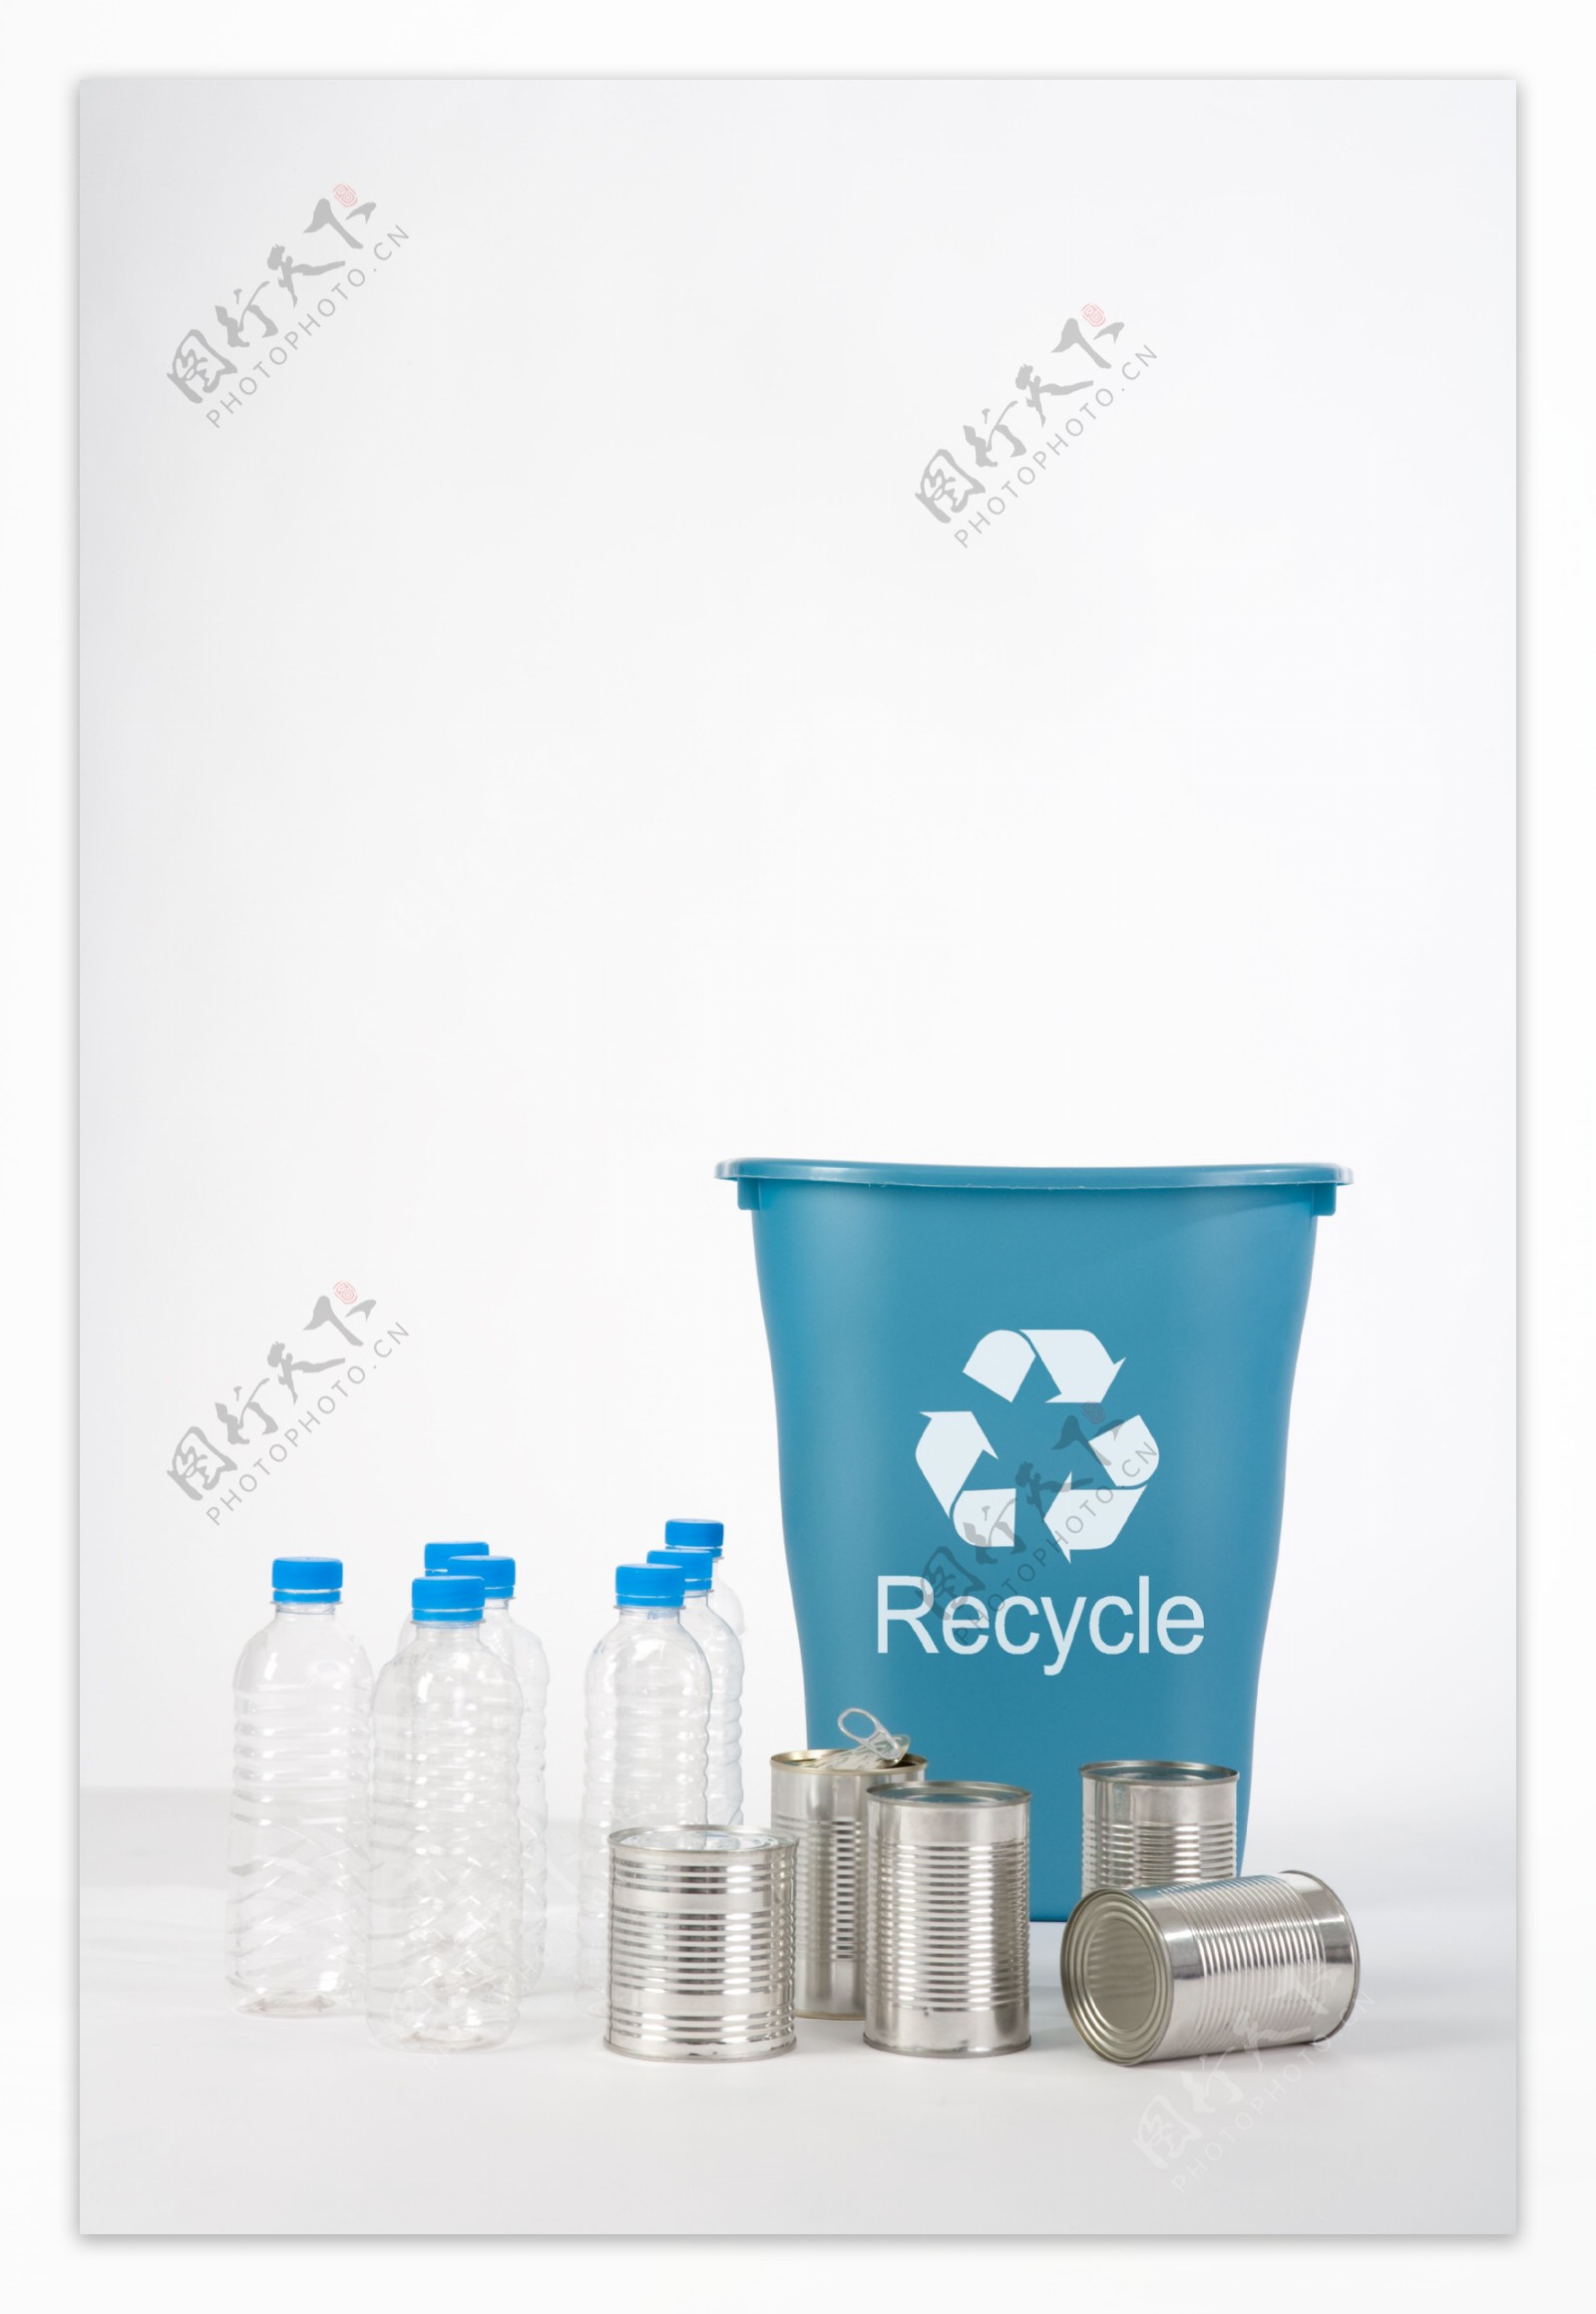 矿泉水瓶罐子与垃圾桶图片